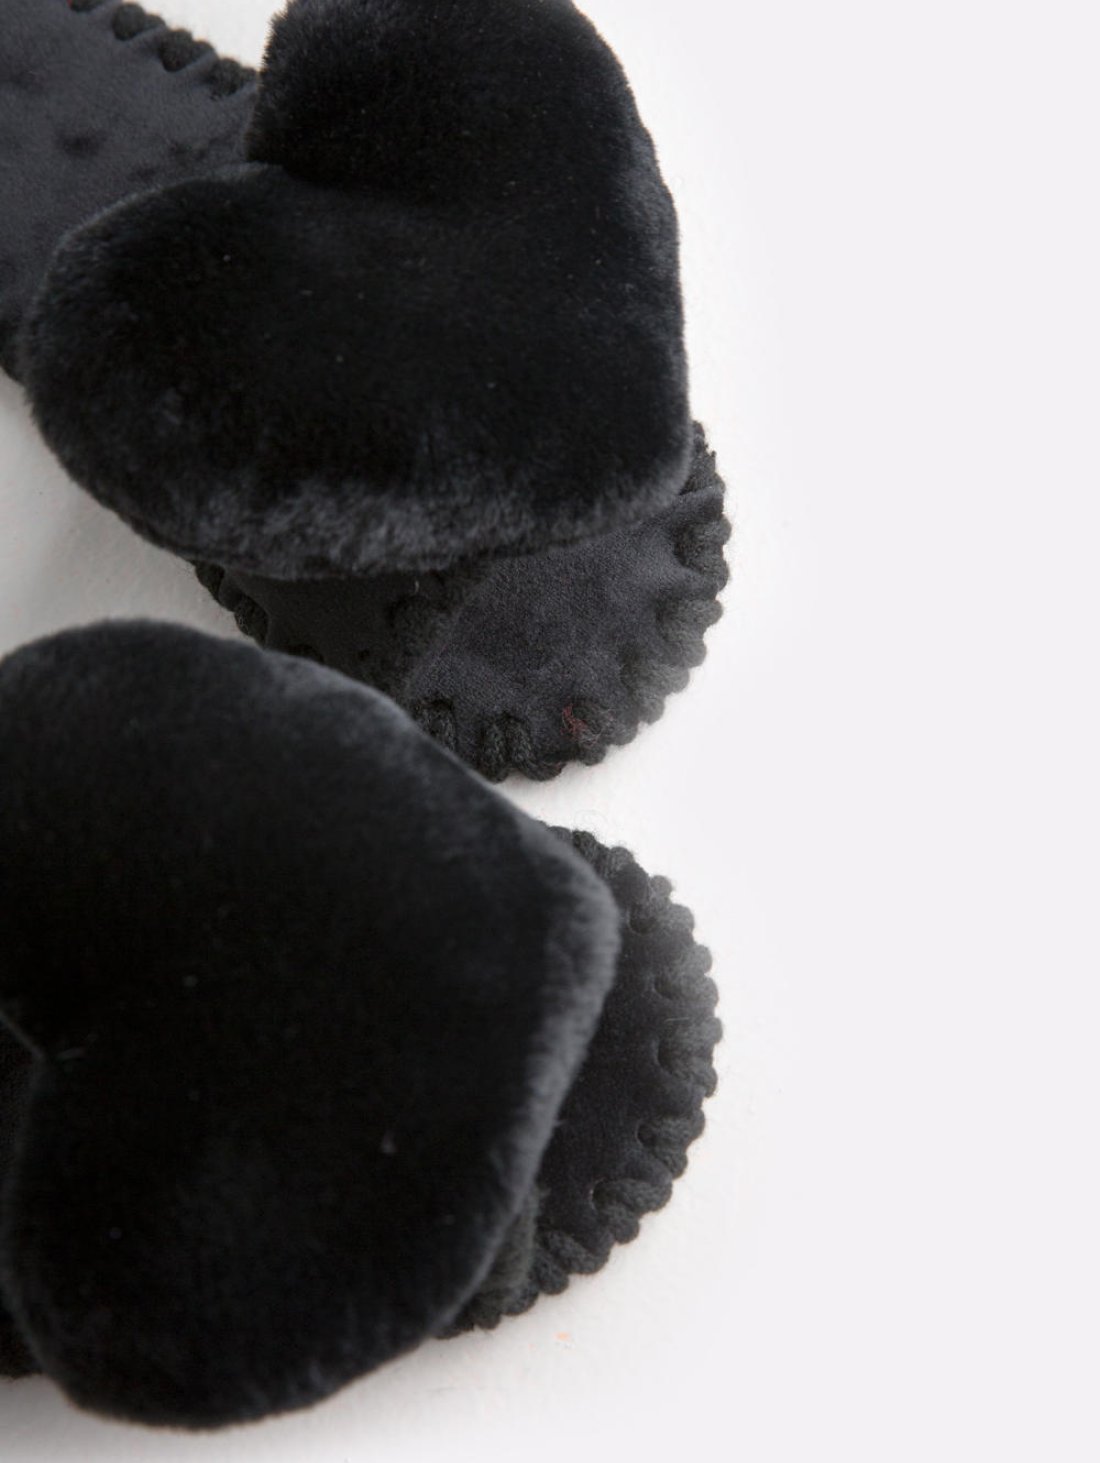 Домашние пушистые тапочки для женщин сердечка цвета черный уголь, Family Story - 4